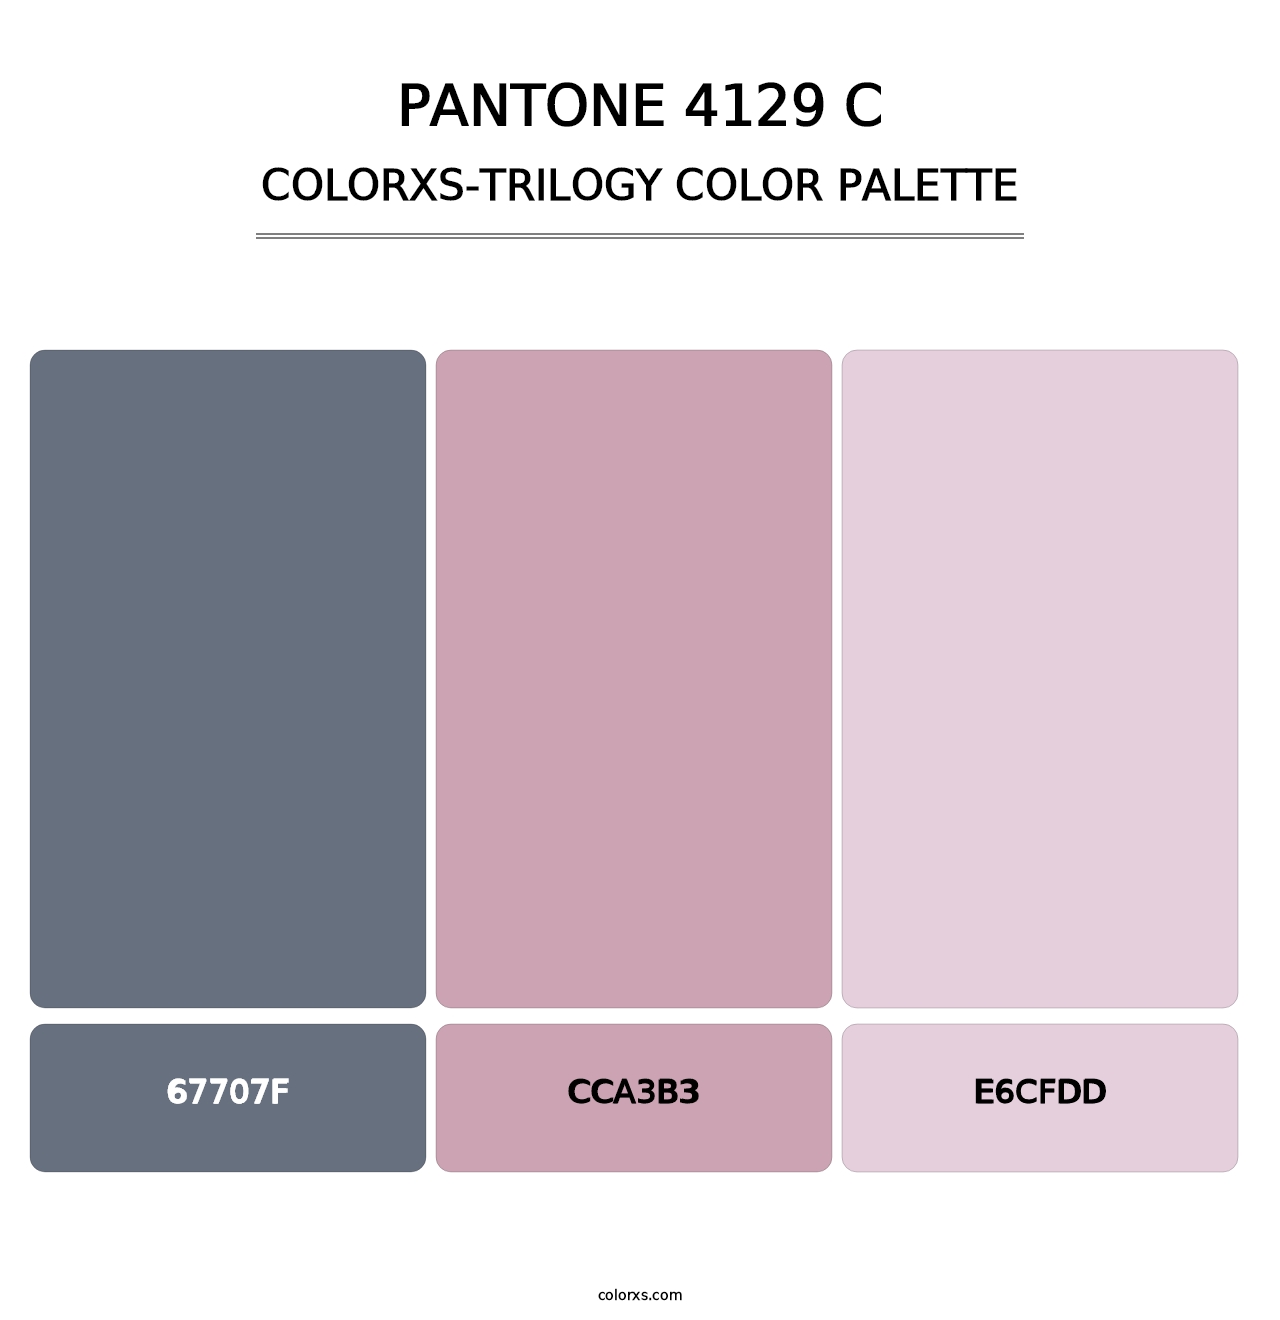 PANTONE 4129 C - Colorxs Trilogy Palette